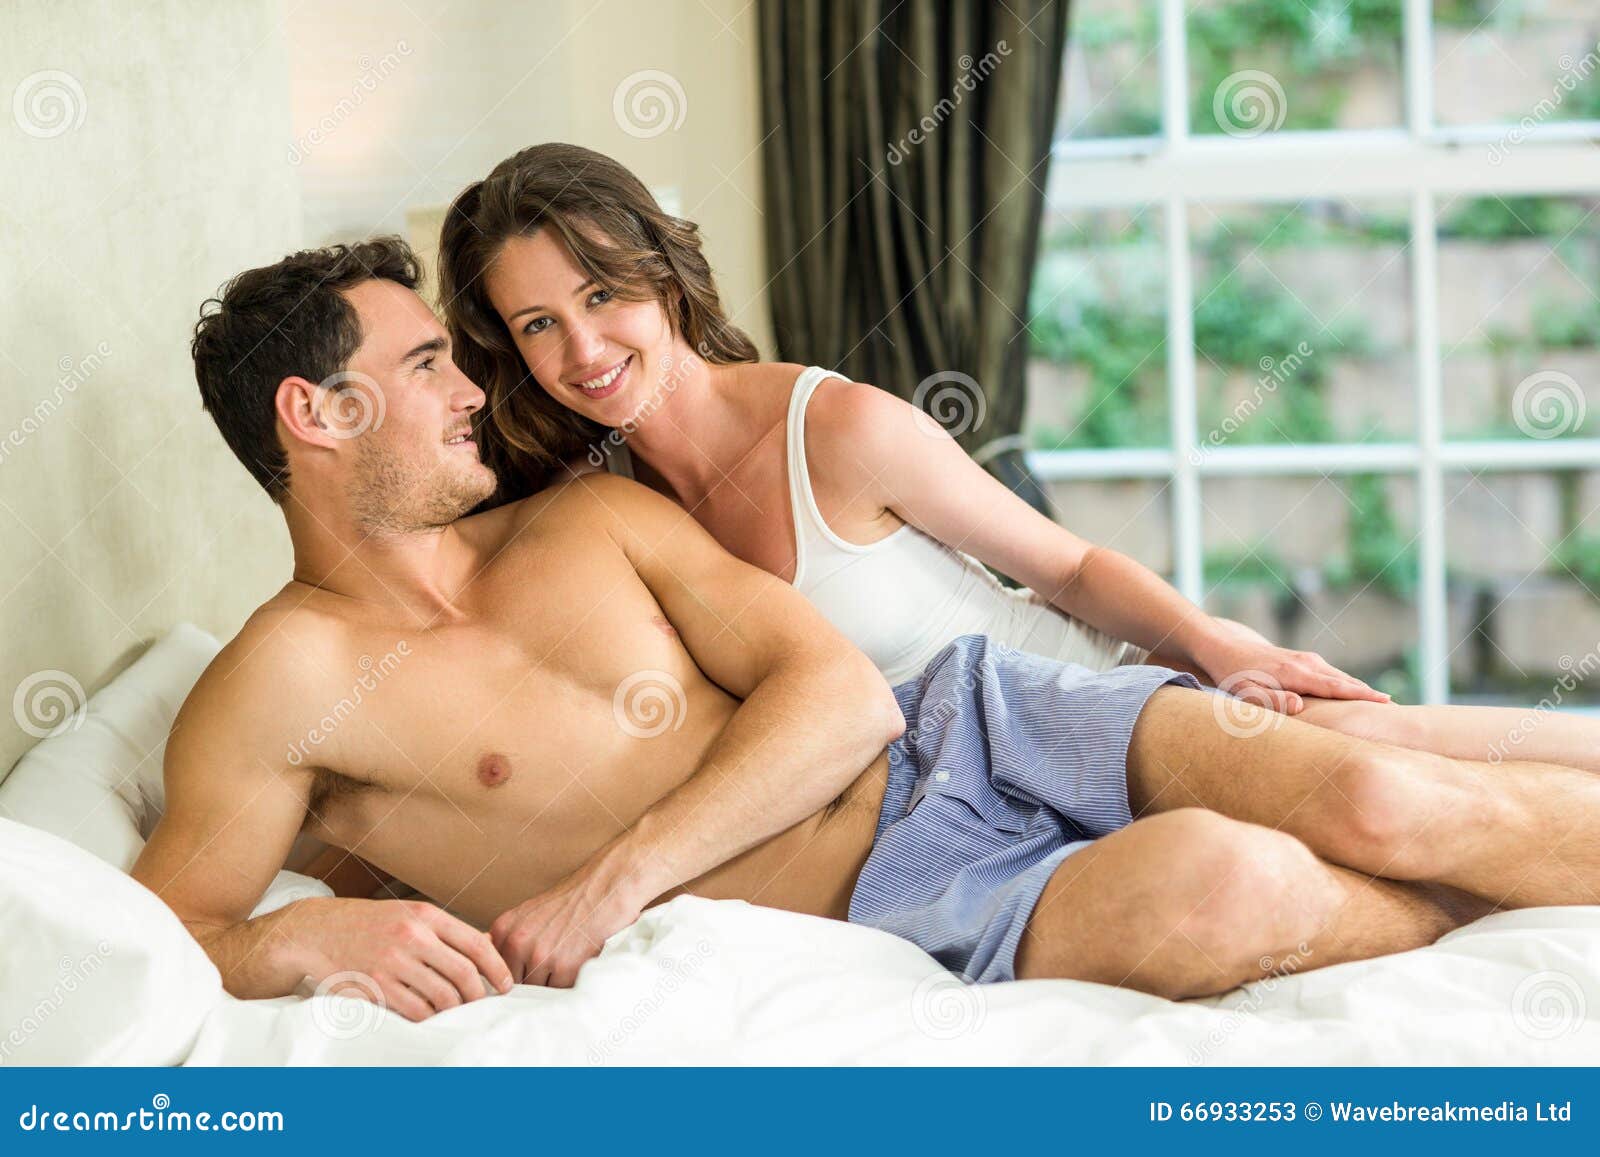 Расслабилась с другом. Расслабленная молодая пара в постели. Молодая пара отдыхает в постели. Молодая пара в кровати. Сорокалетние парочки в постели.